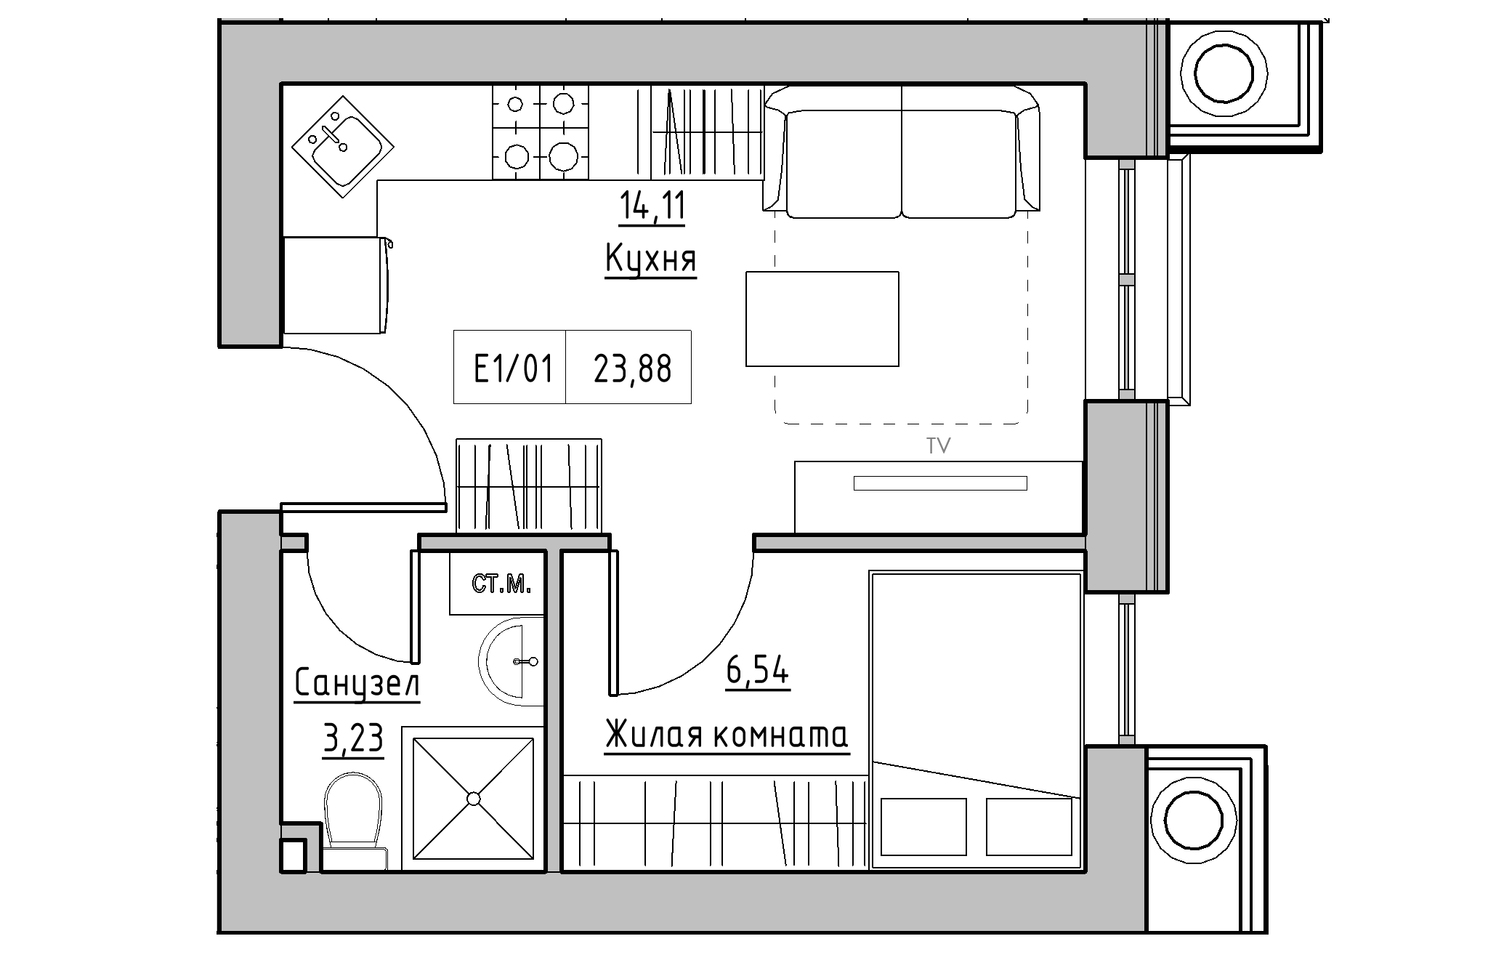 Планування 1-к квартира площею 23.88м2, KS-010-03/0011.